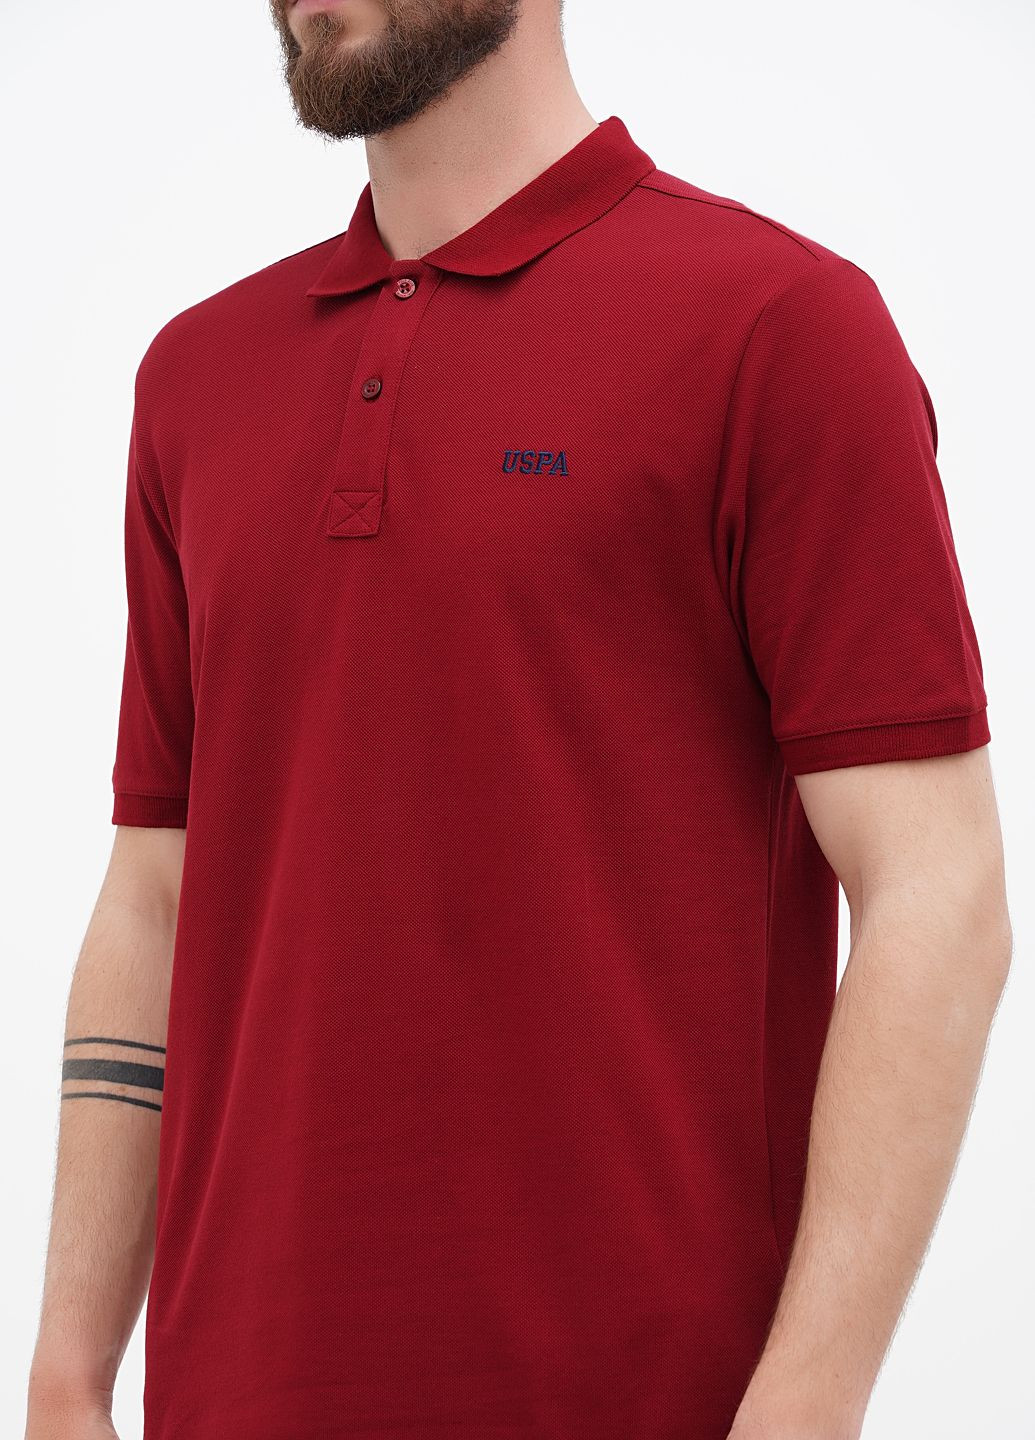 Бордовая футболка-футболка поло u.s. polo assn мужская для мужчин U.S. Polo Assn.